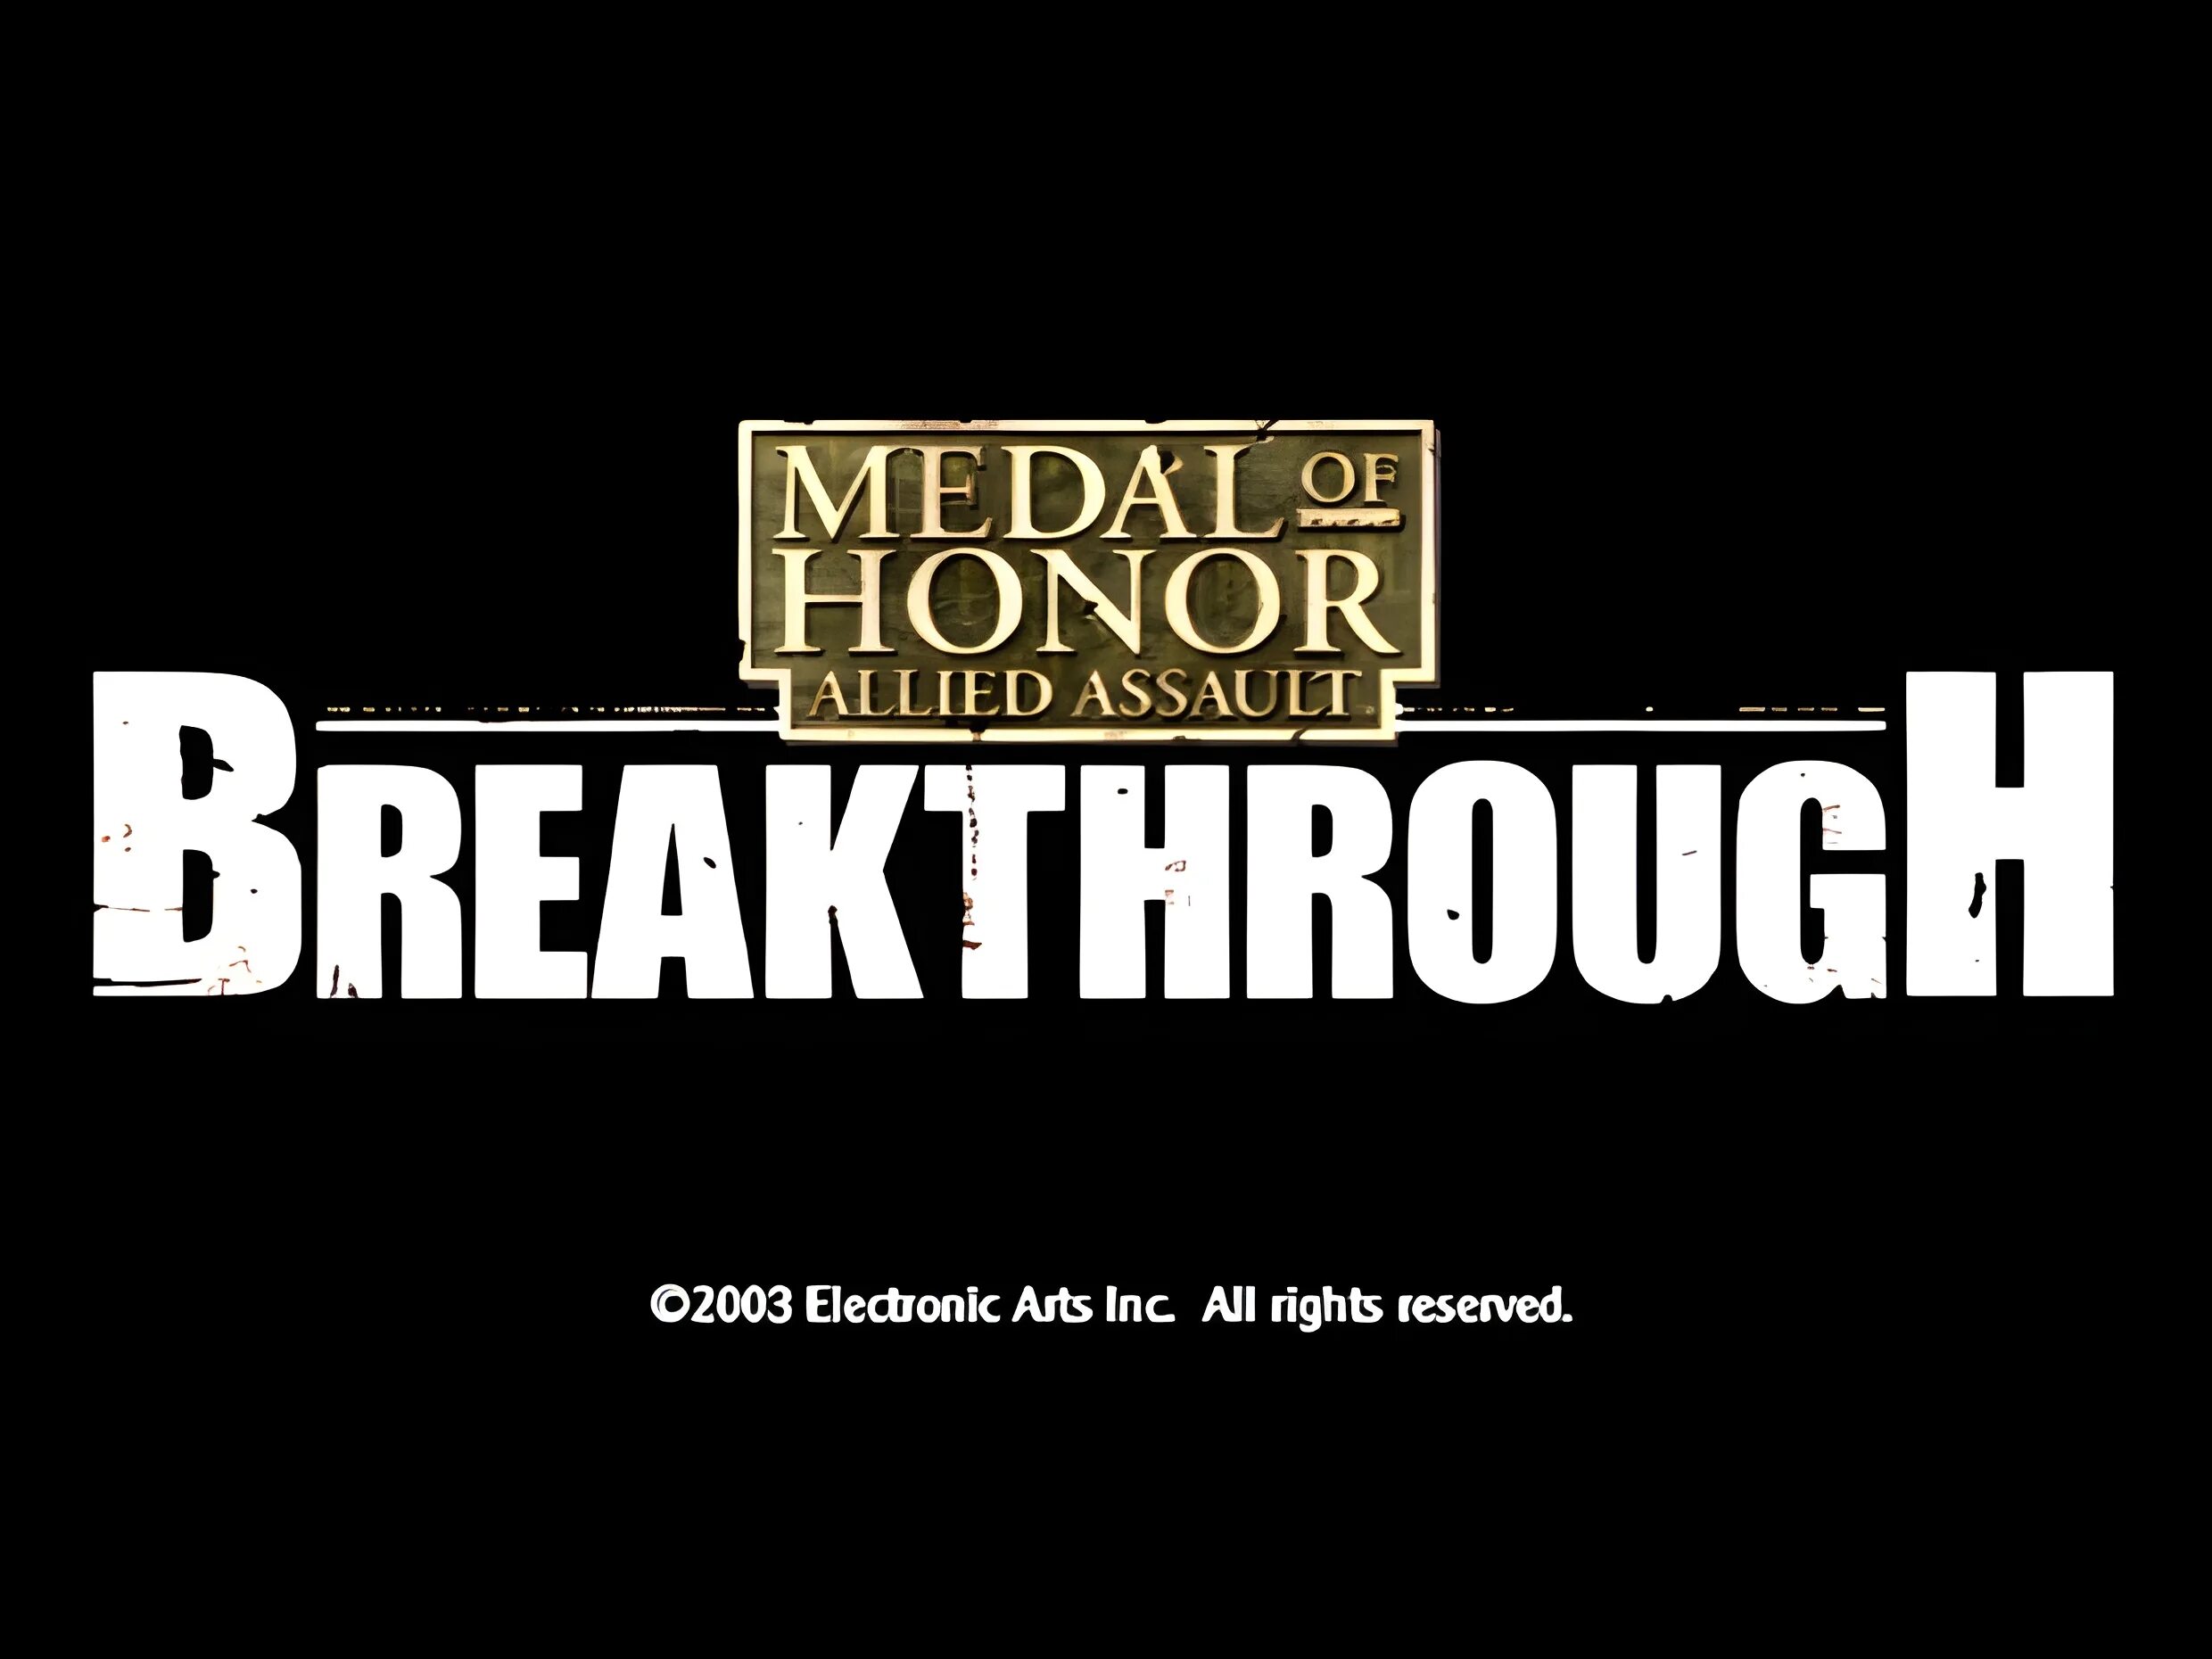 Medal of honor assault breakthrough. Medal of Honor: Allied Assault – Breakthrough (2003). Медаль оф хонор Allied Assault Breakthrough. Medal of Honor Allied Assault Breakthrough. Moh Breakthrough.